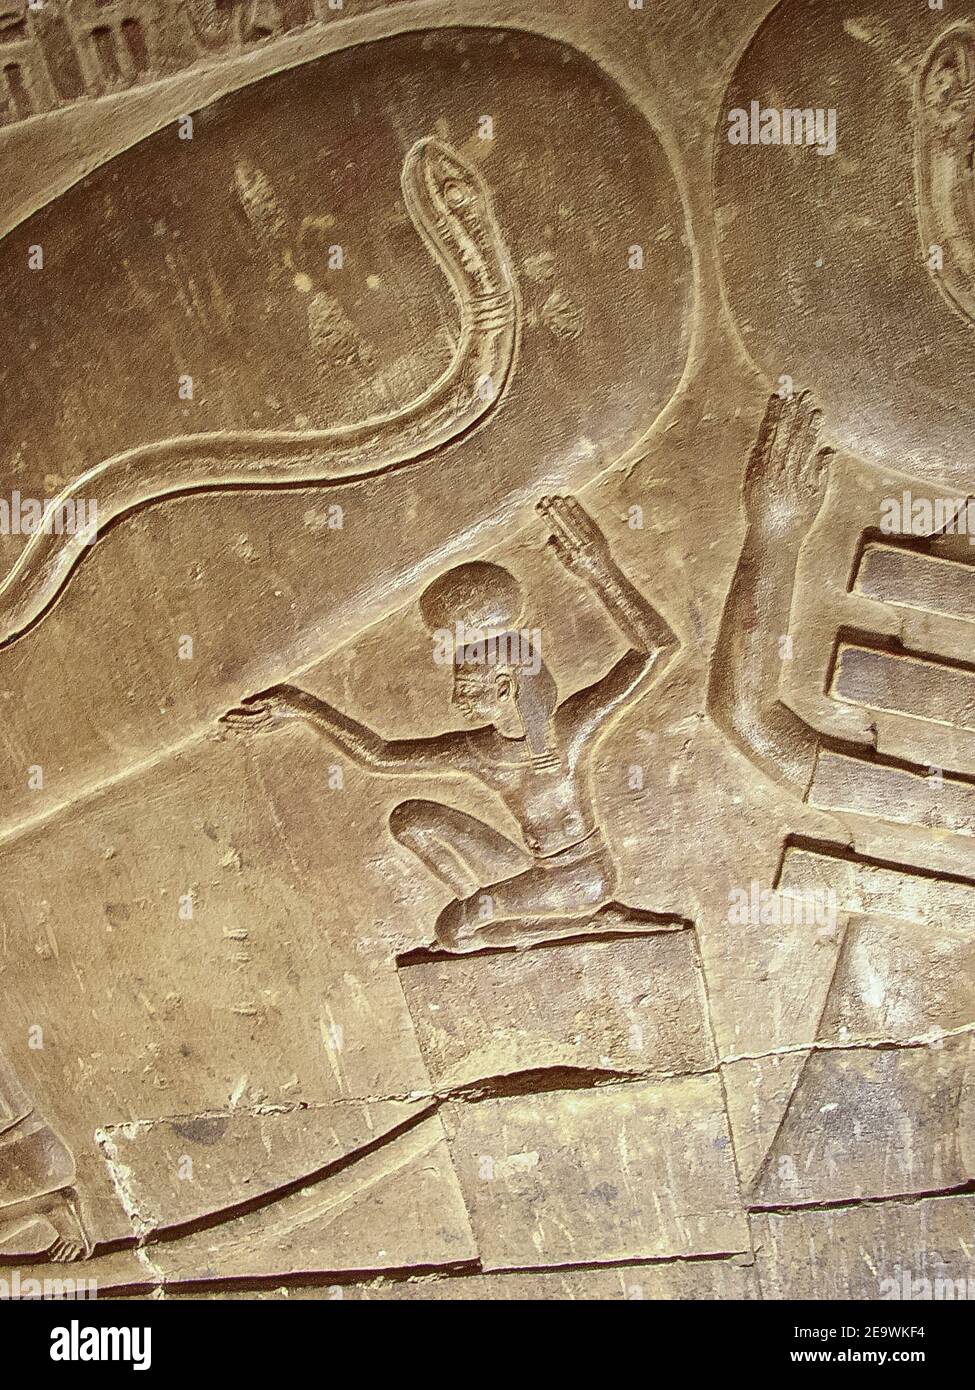 Ägypten, Dendera Tempel, in einem Raum, seltsame Szene namens "Glühbirne", manchmal (zu Unrecht) als Beweis dafür, dass die alten Ägypter wussten Strom gesehen. Stockfoto